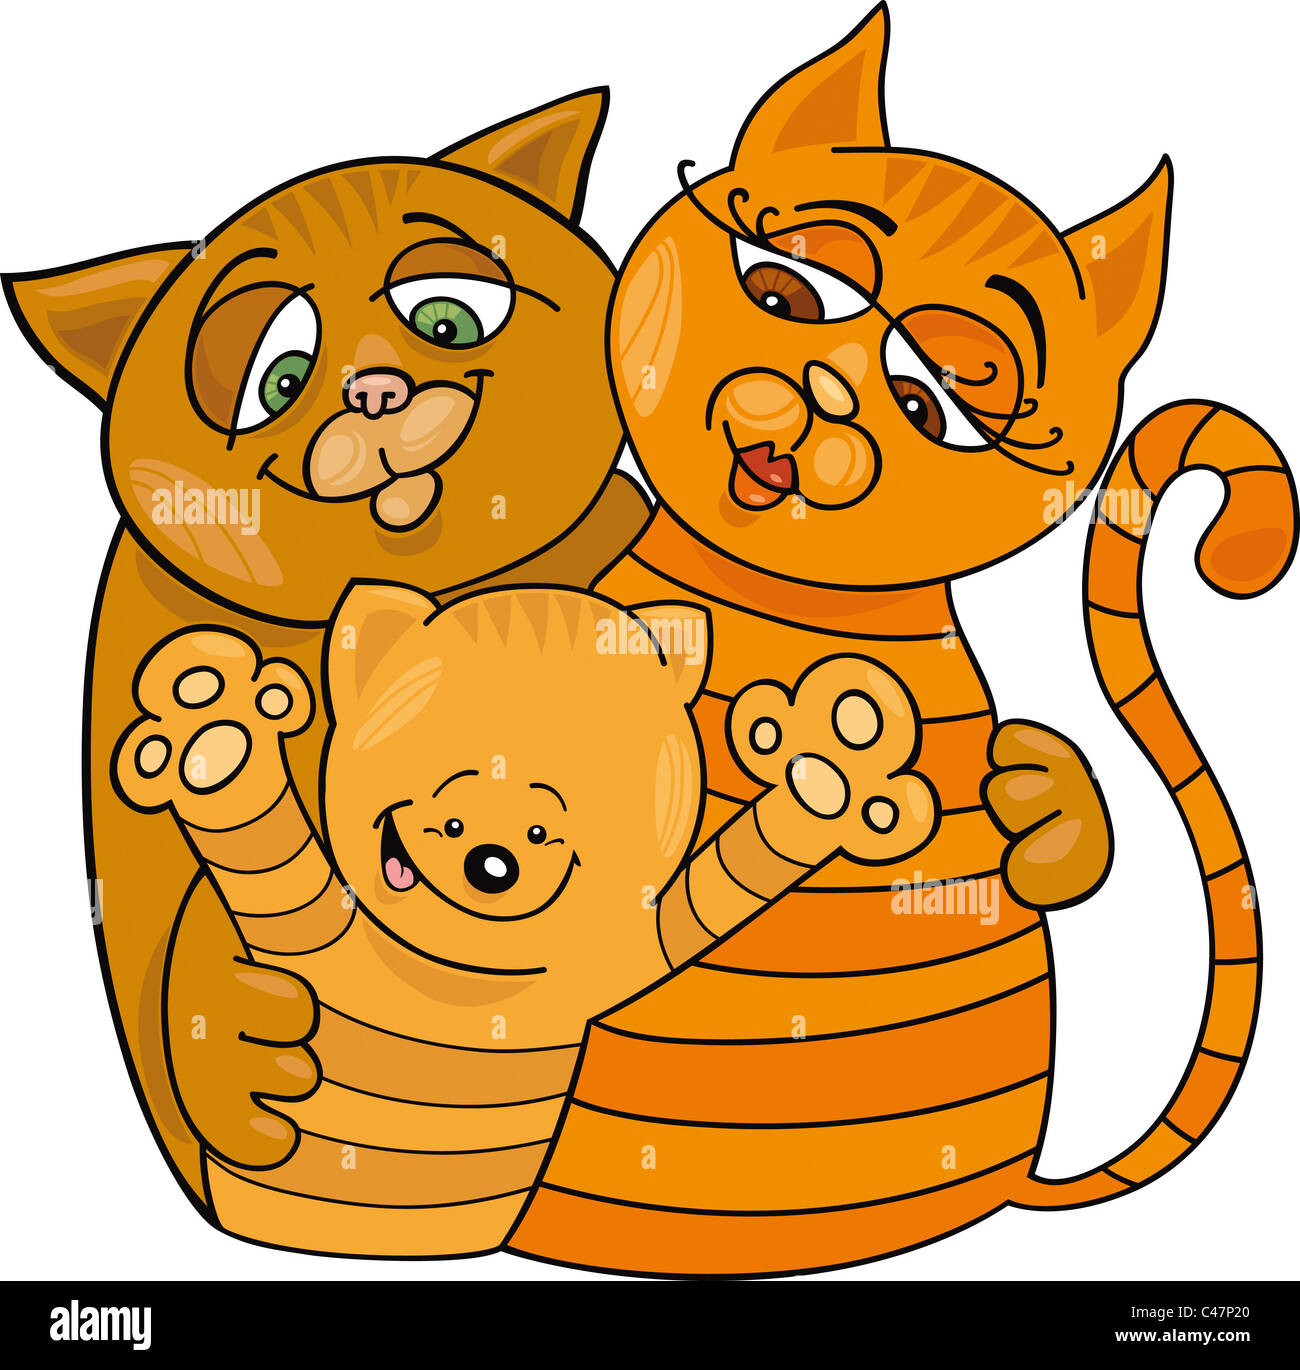 Cartoon illustration of happy cats family Stock Photo